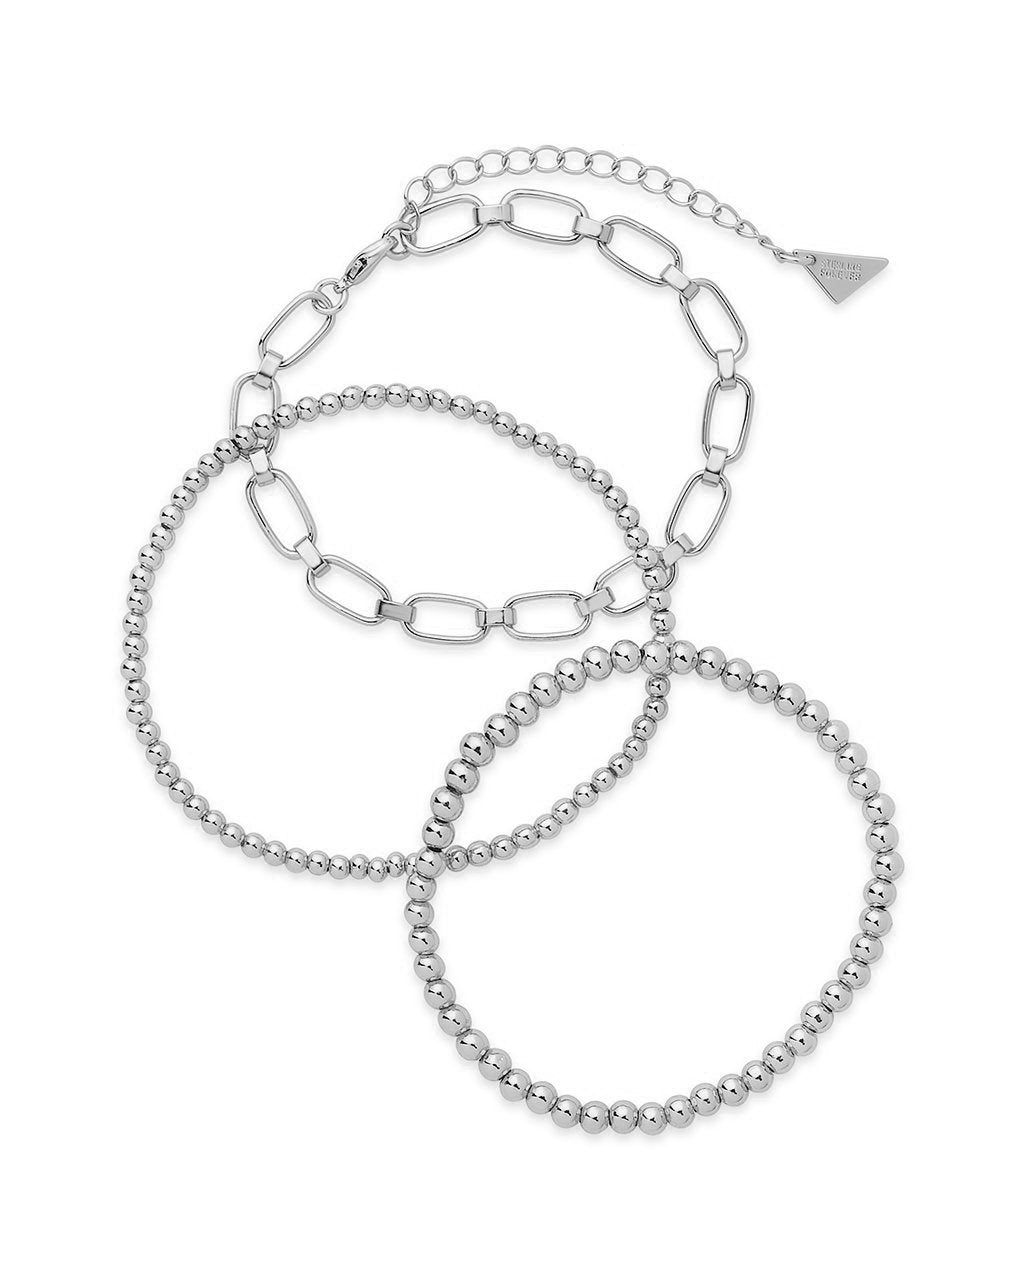 Chain & Bead Bracelet Set of 3 Bracelet Sterling Forever Silver 